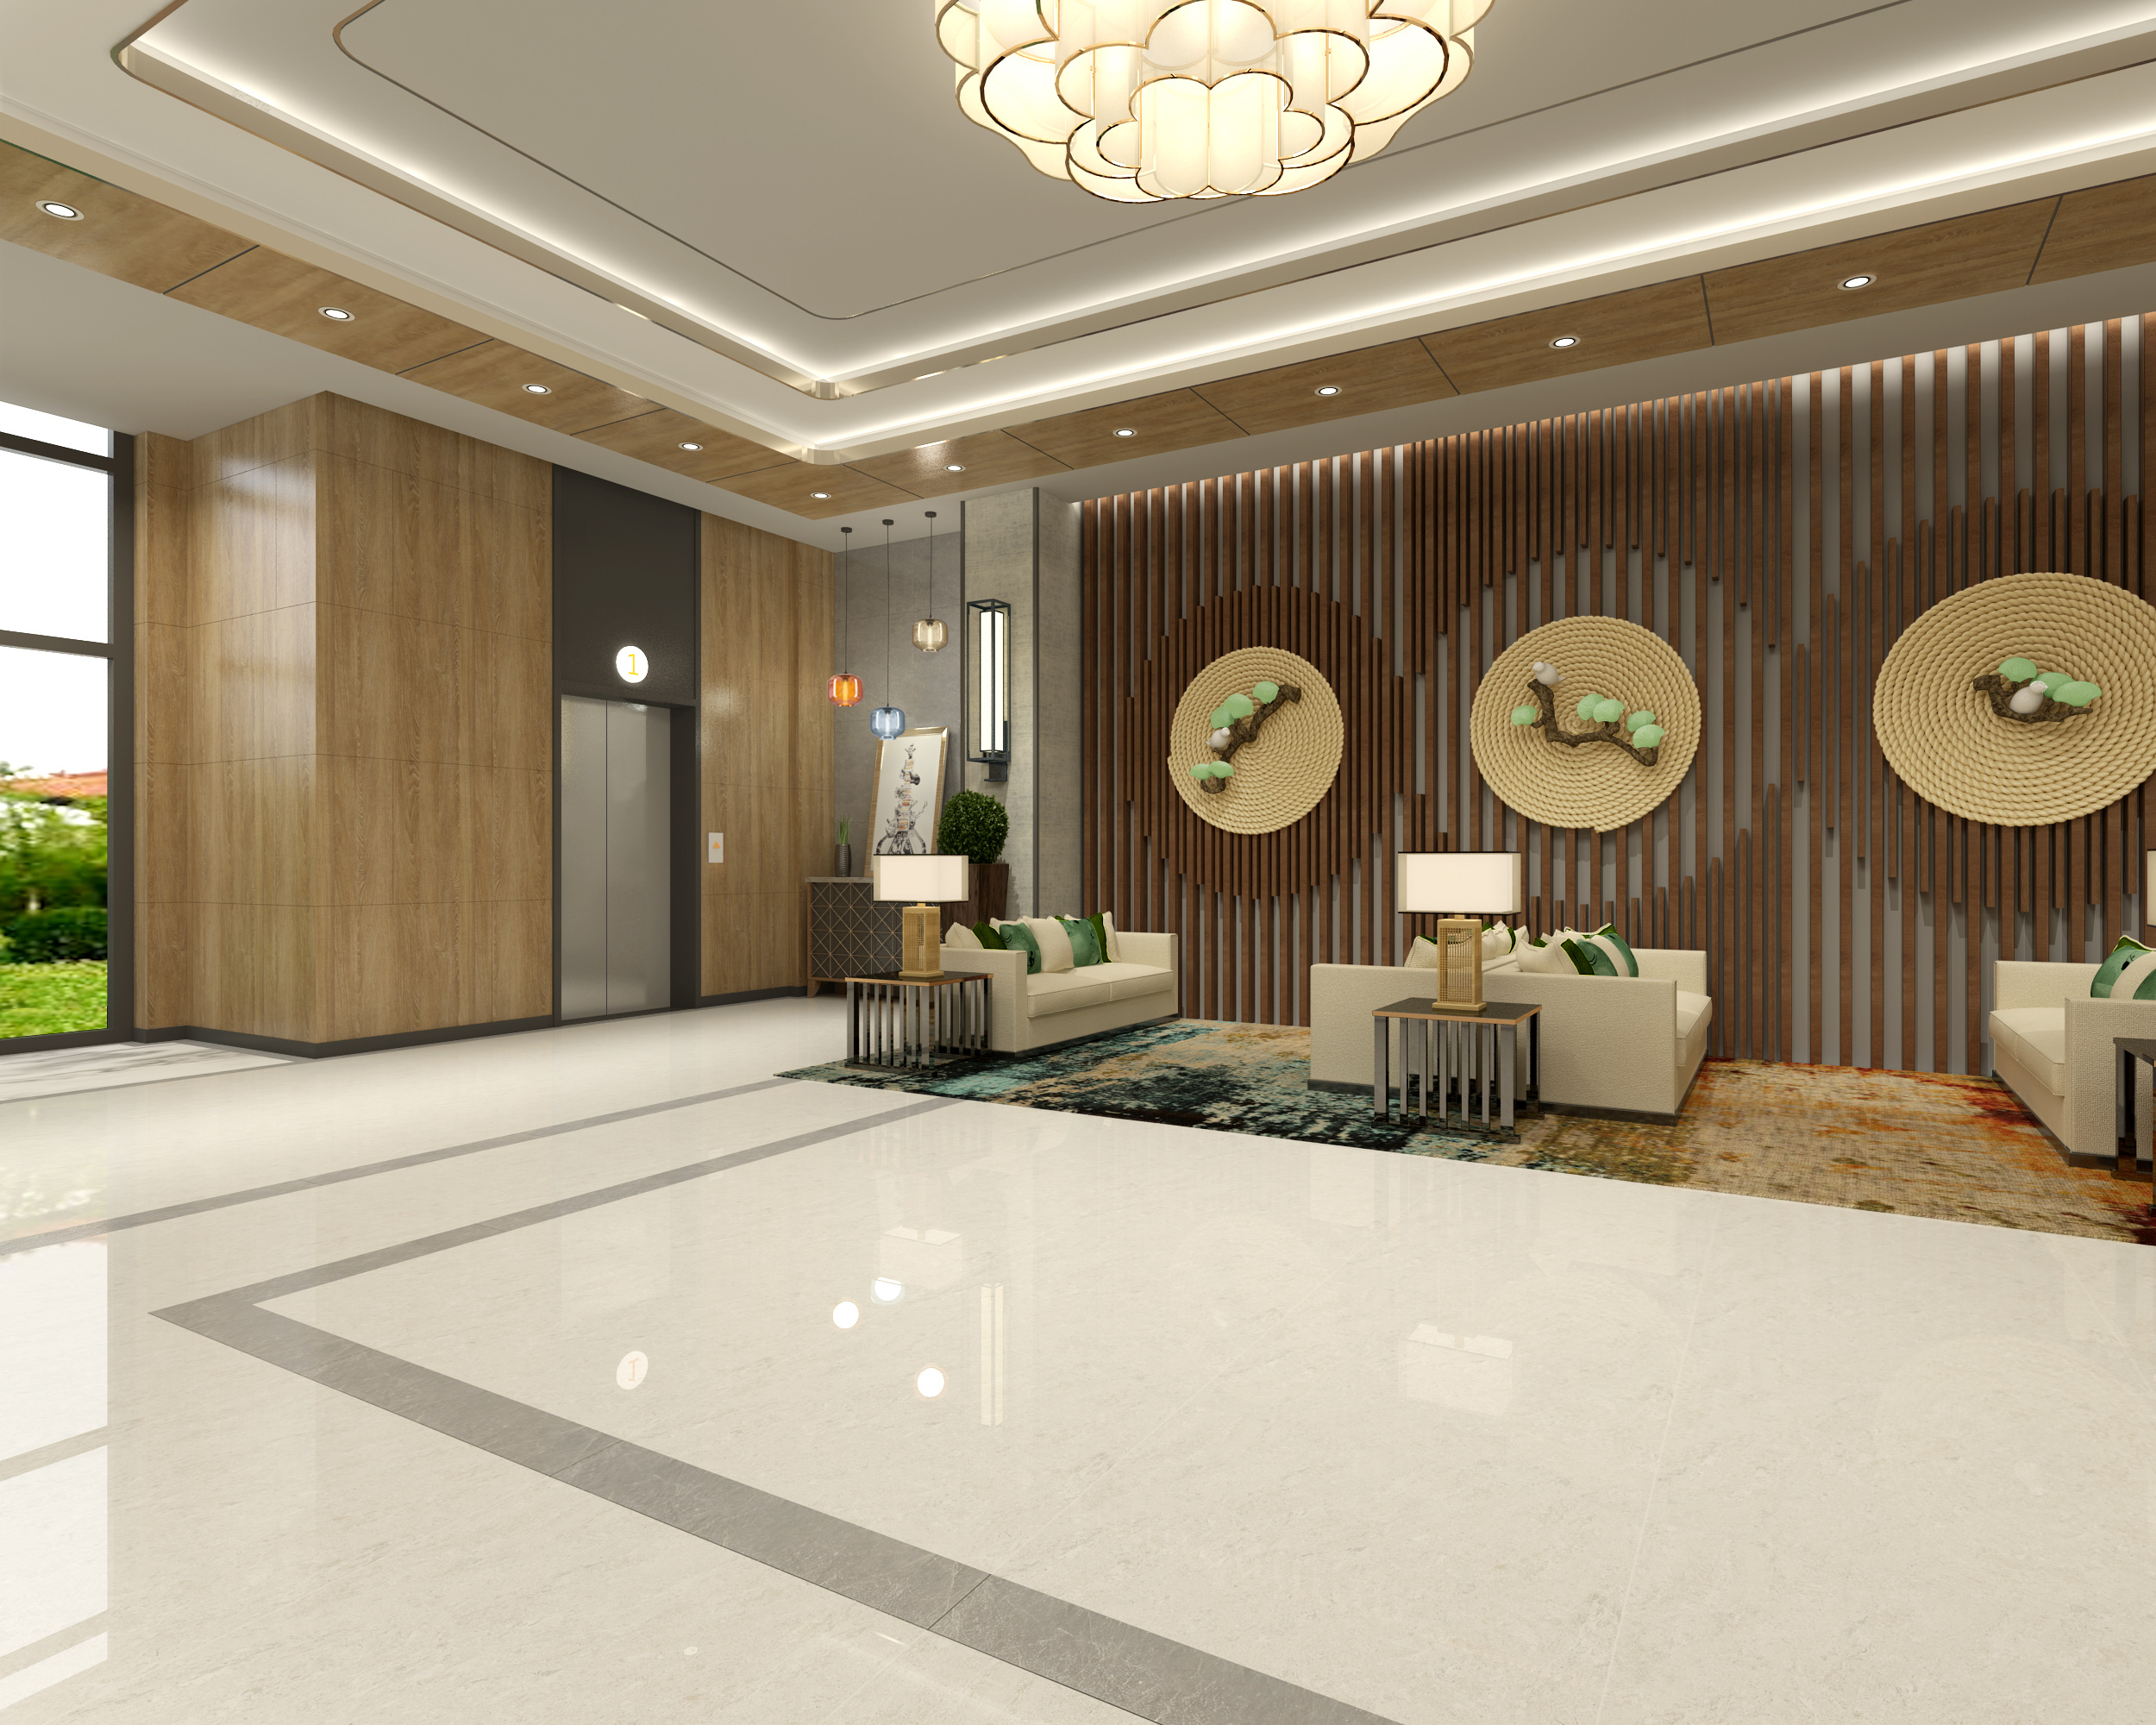 酒店大厅 - 效果图交流区-建E室内设计网